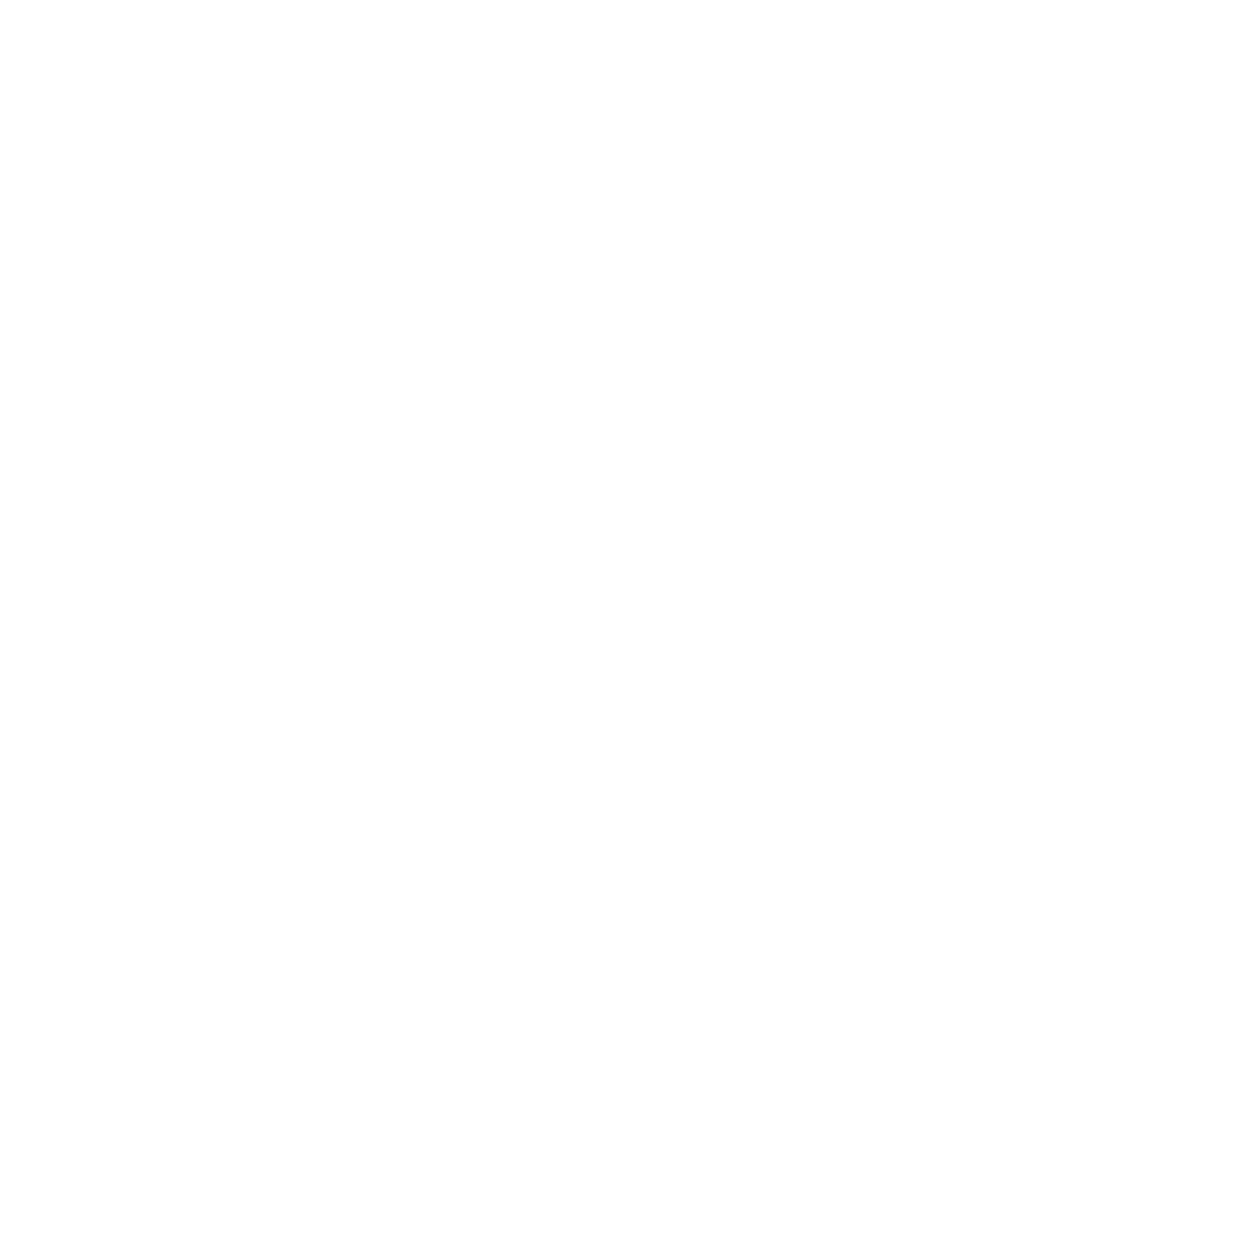 IAAMB ACWT